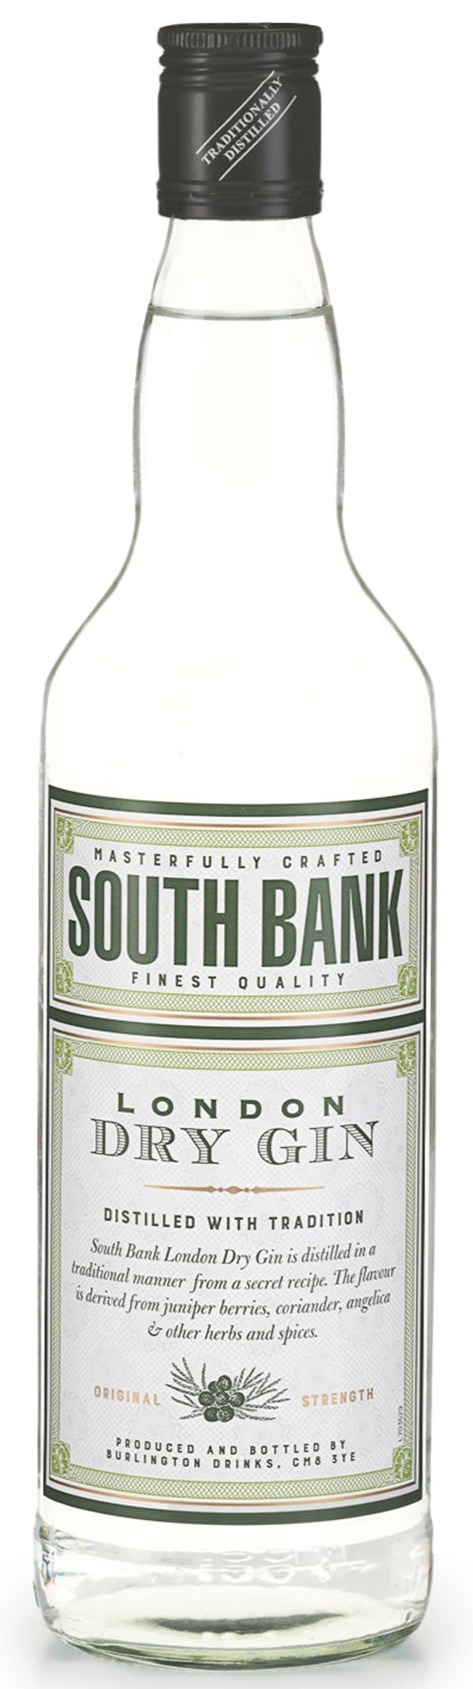 SOUTH BANK GIN 1.5L 37.5%